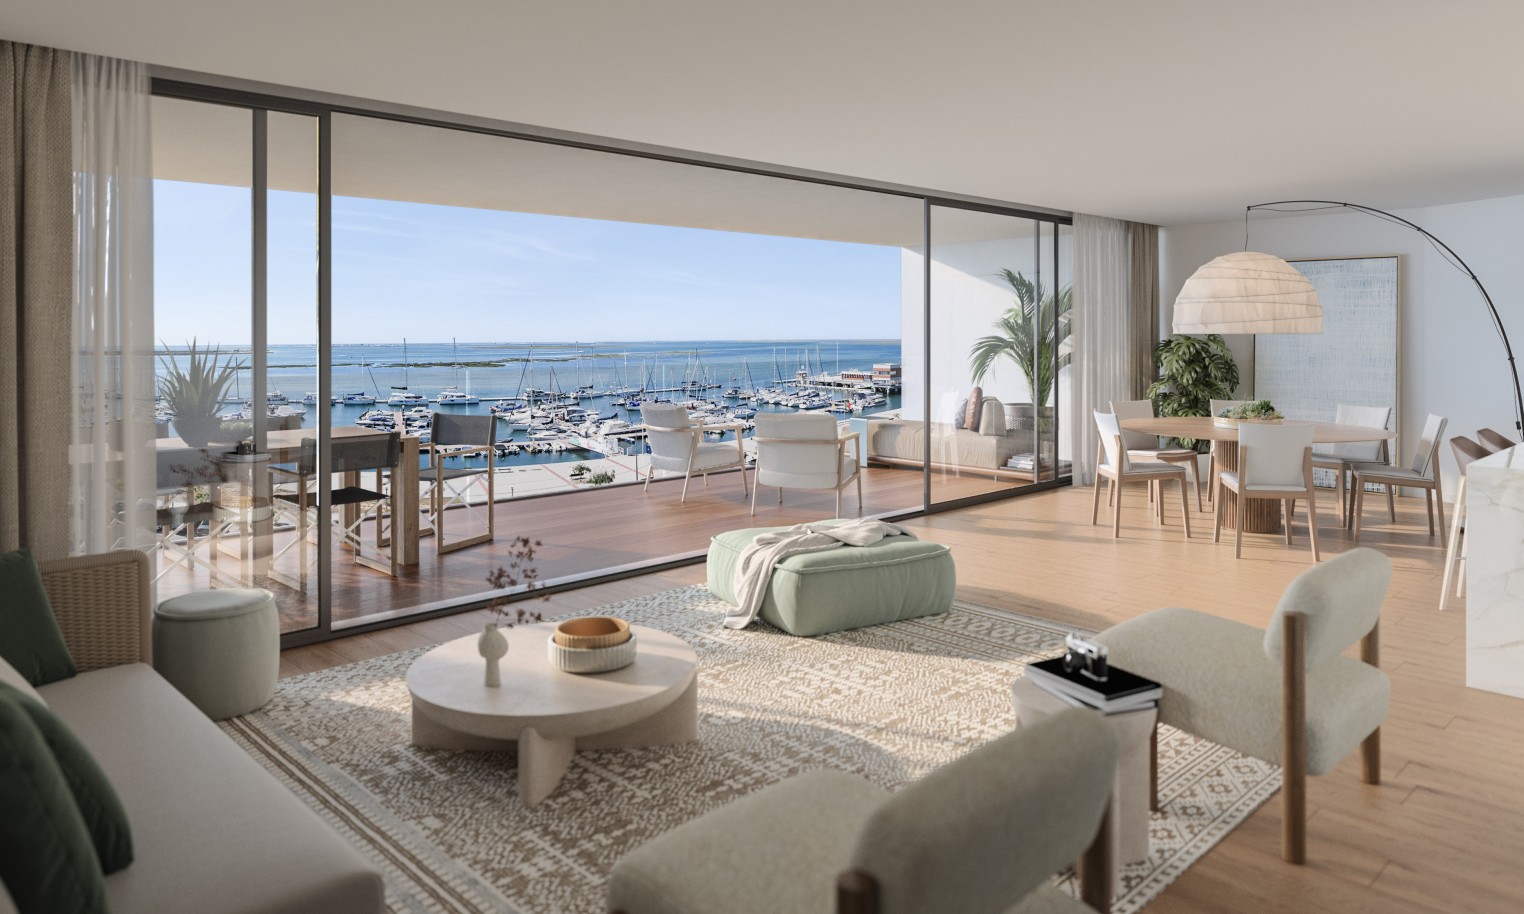 Appartements neufs avec vue sur mer, 1, 2 & 3 chambres, à vendre à Olhão, Algarve_244496